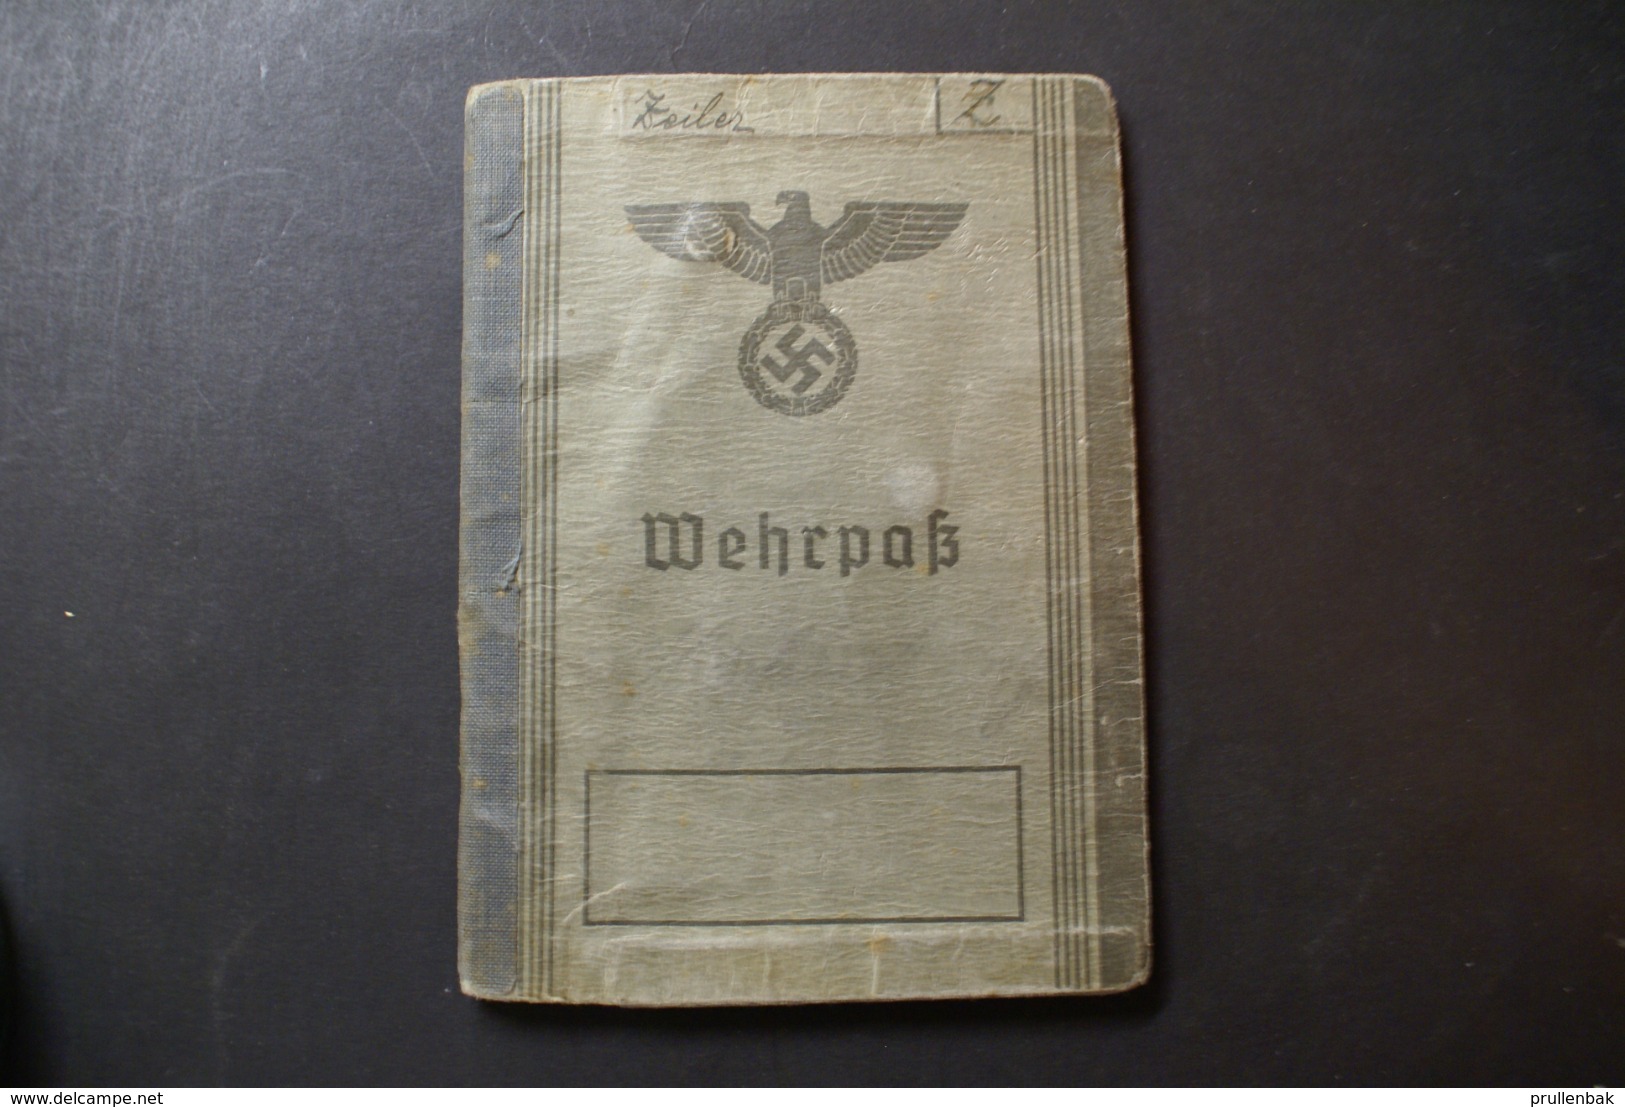 WW2 - WERKPAS - Documents